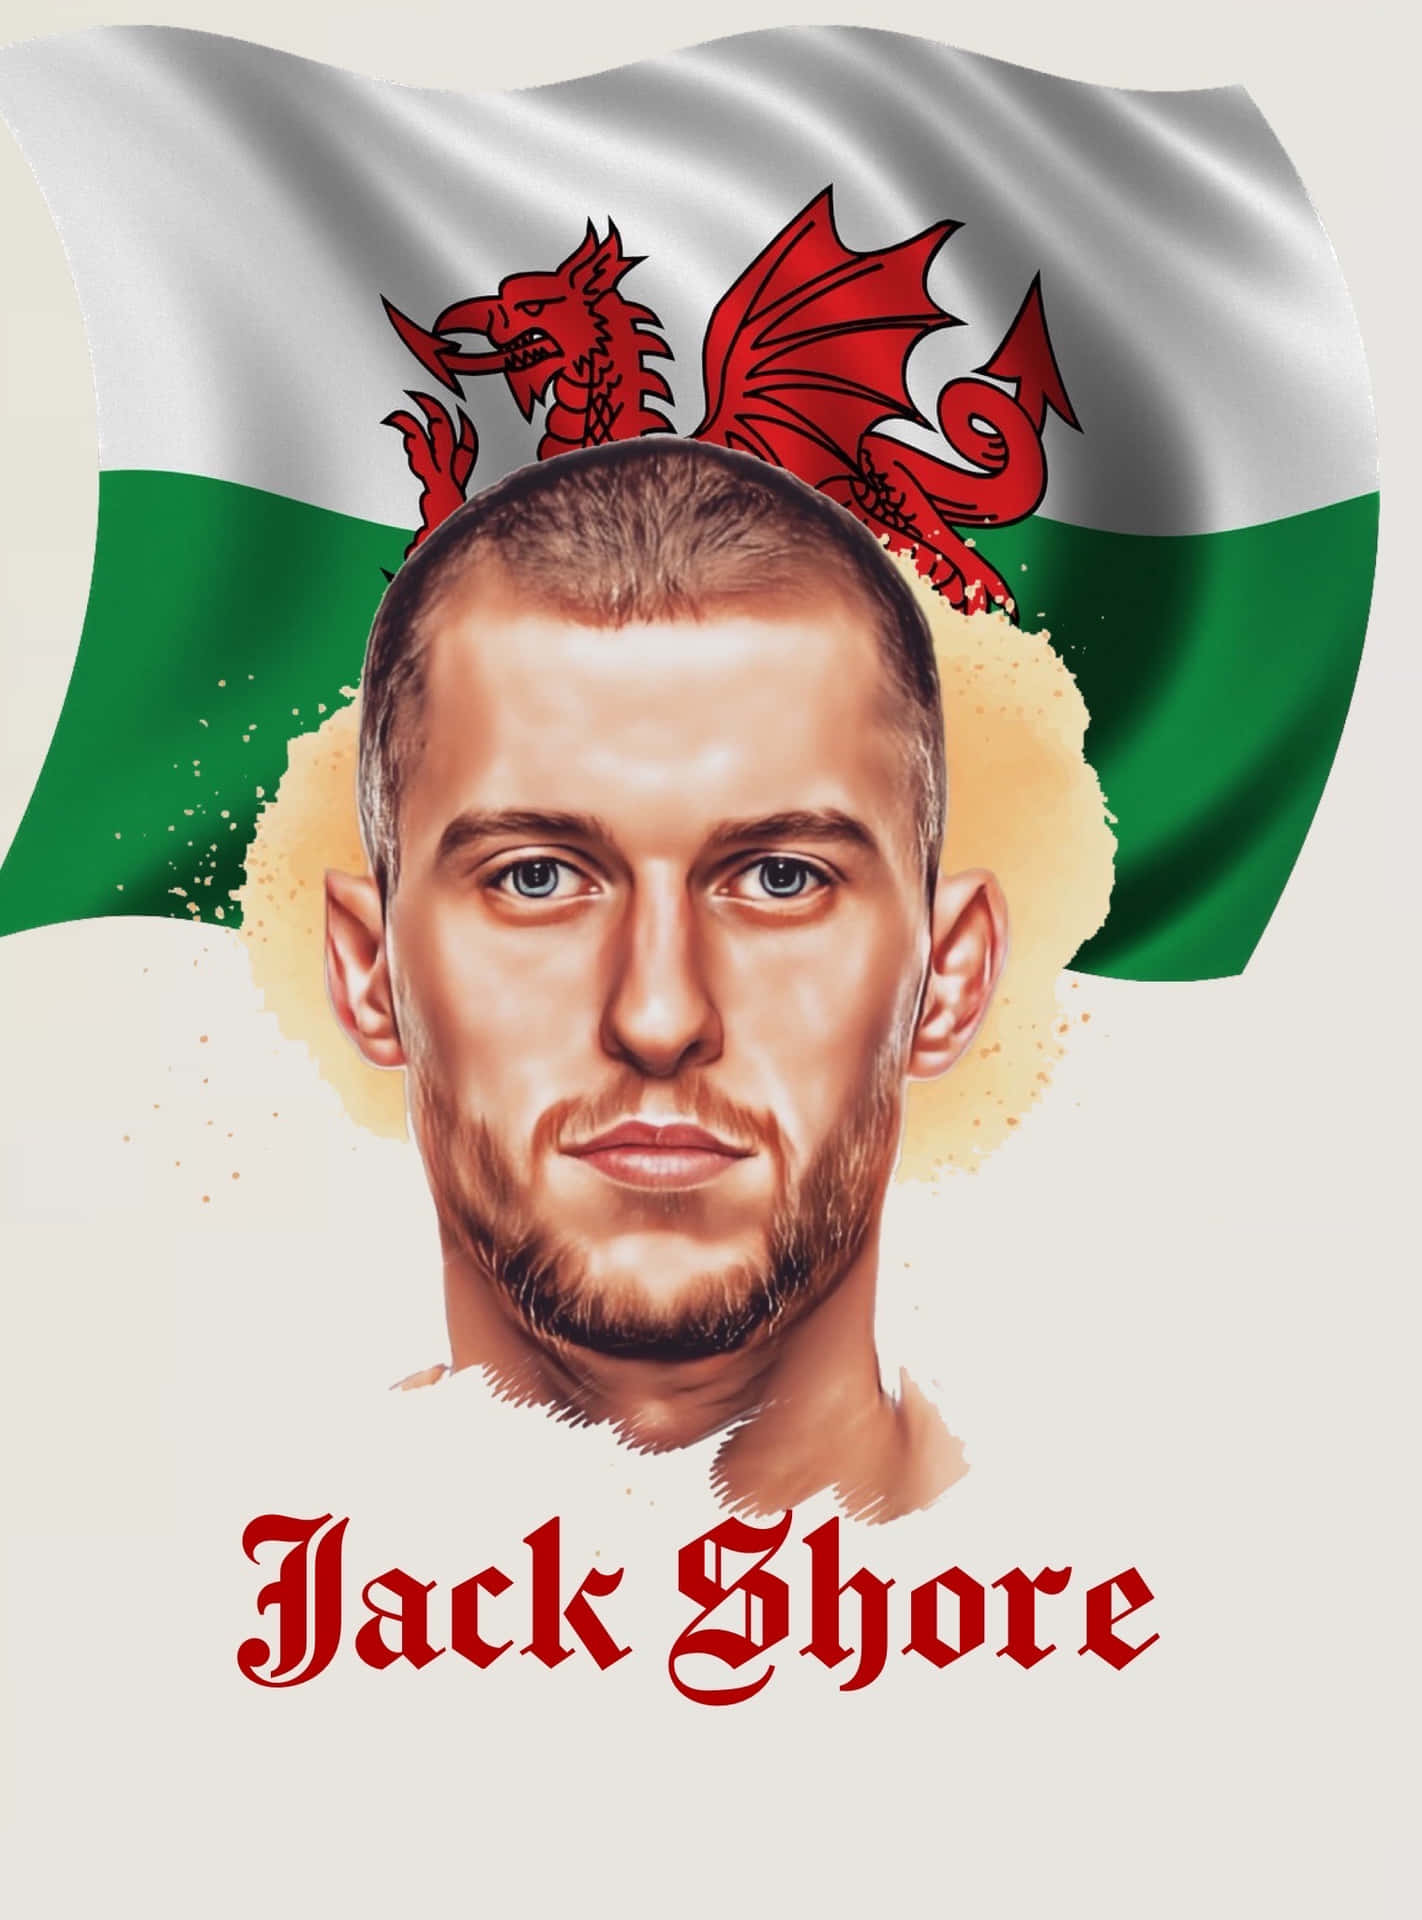 Jack Shore 1517 X 2048 Wallpaper